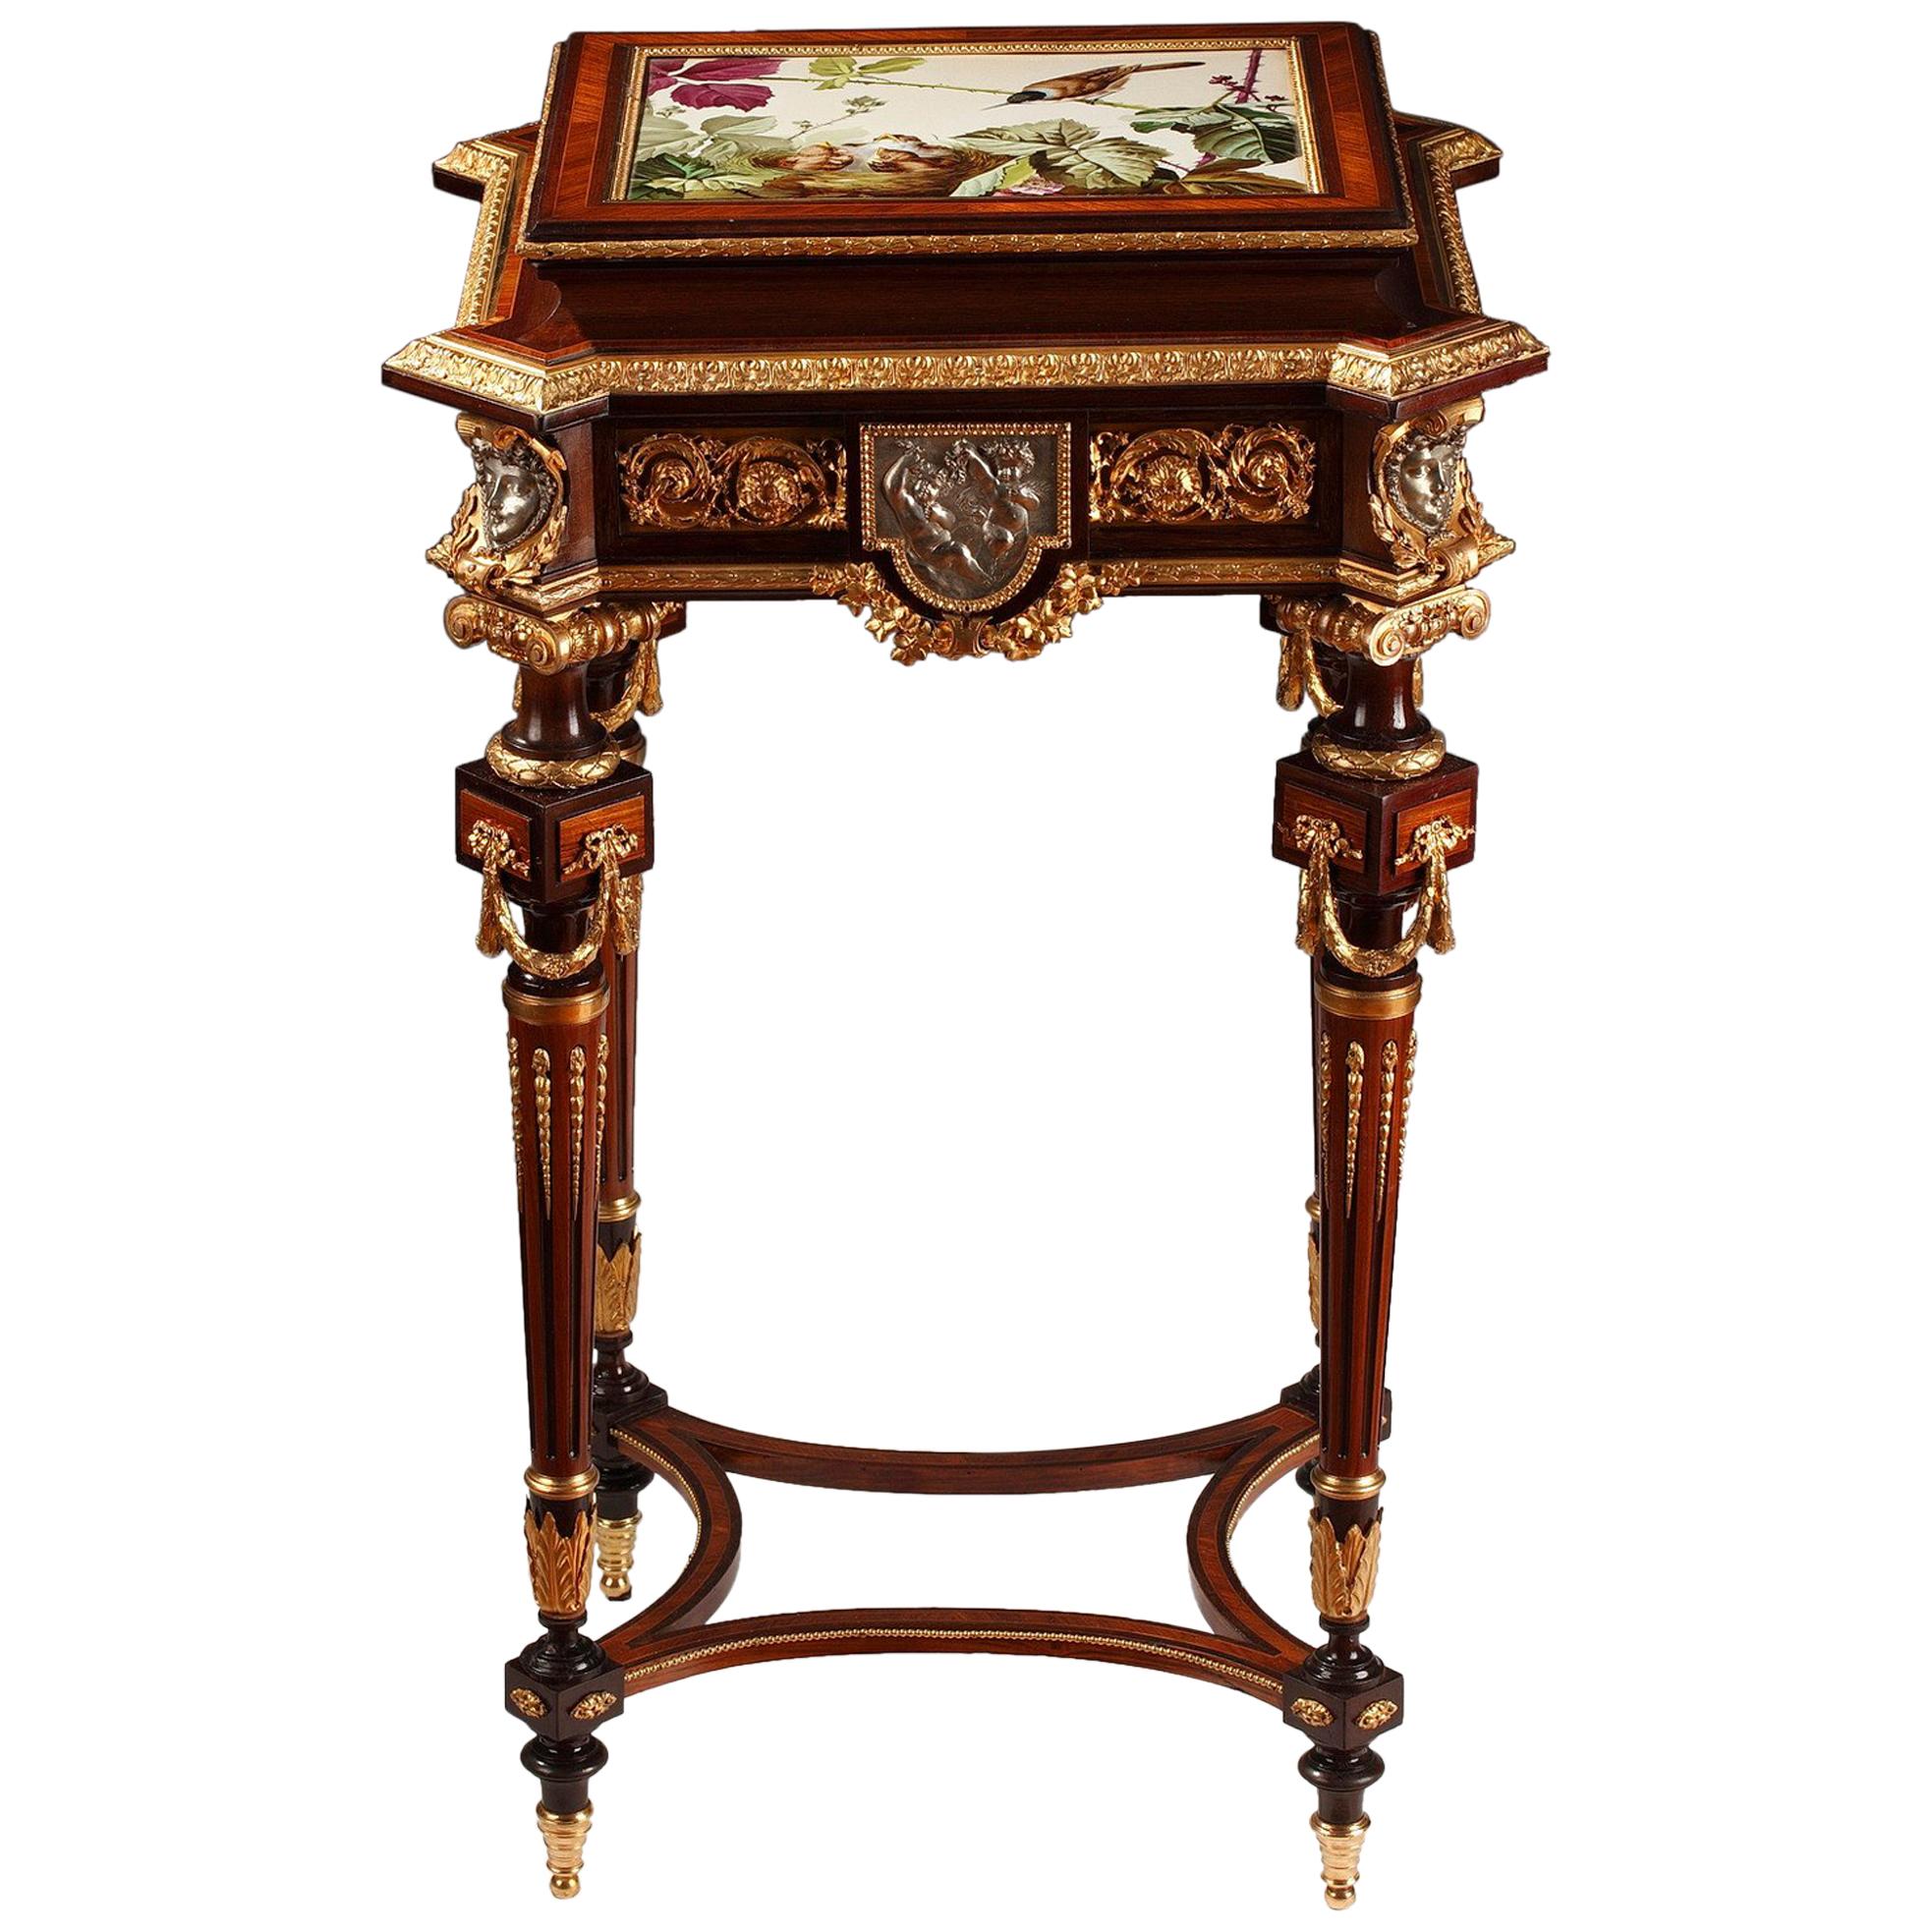 J-P. Tahan Attributed, Louis XVI Style Veneered Wood Jewel Table